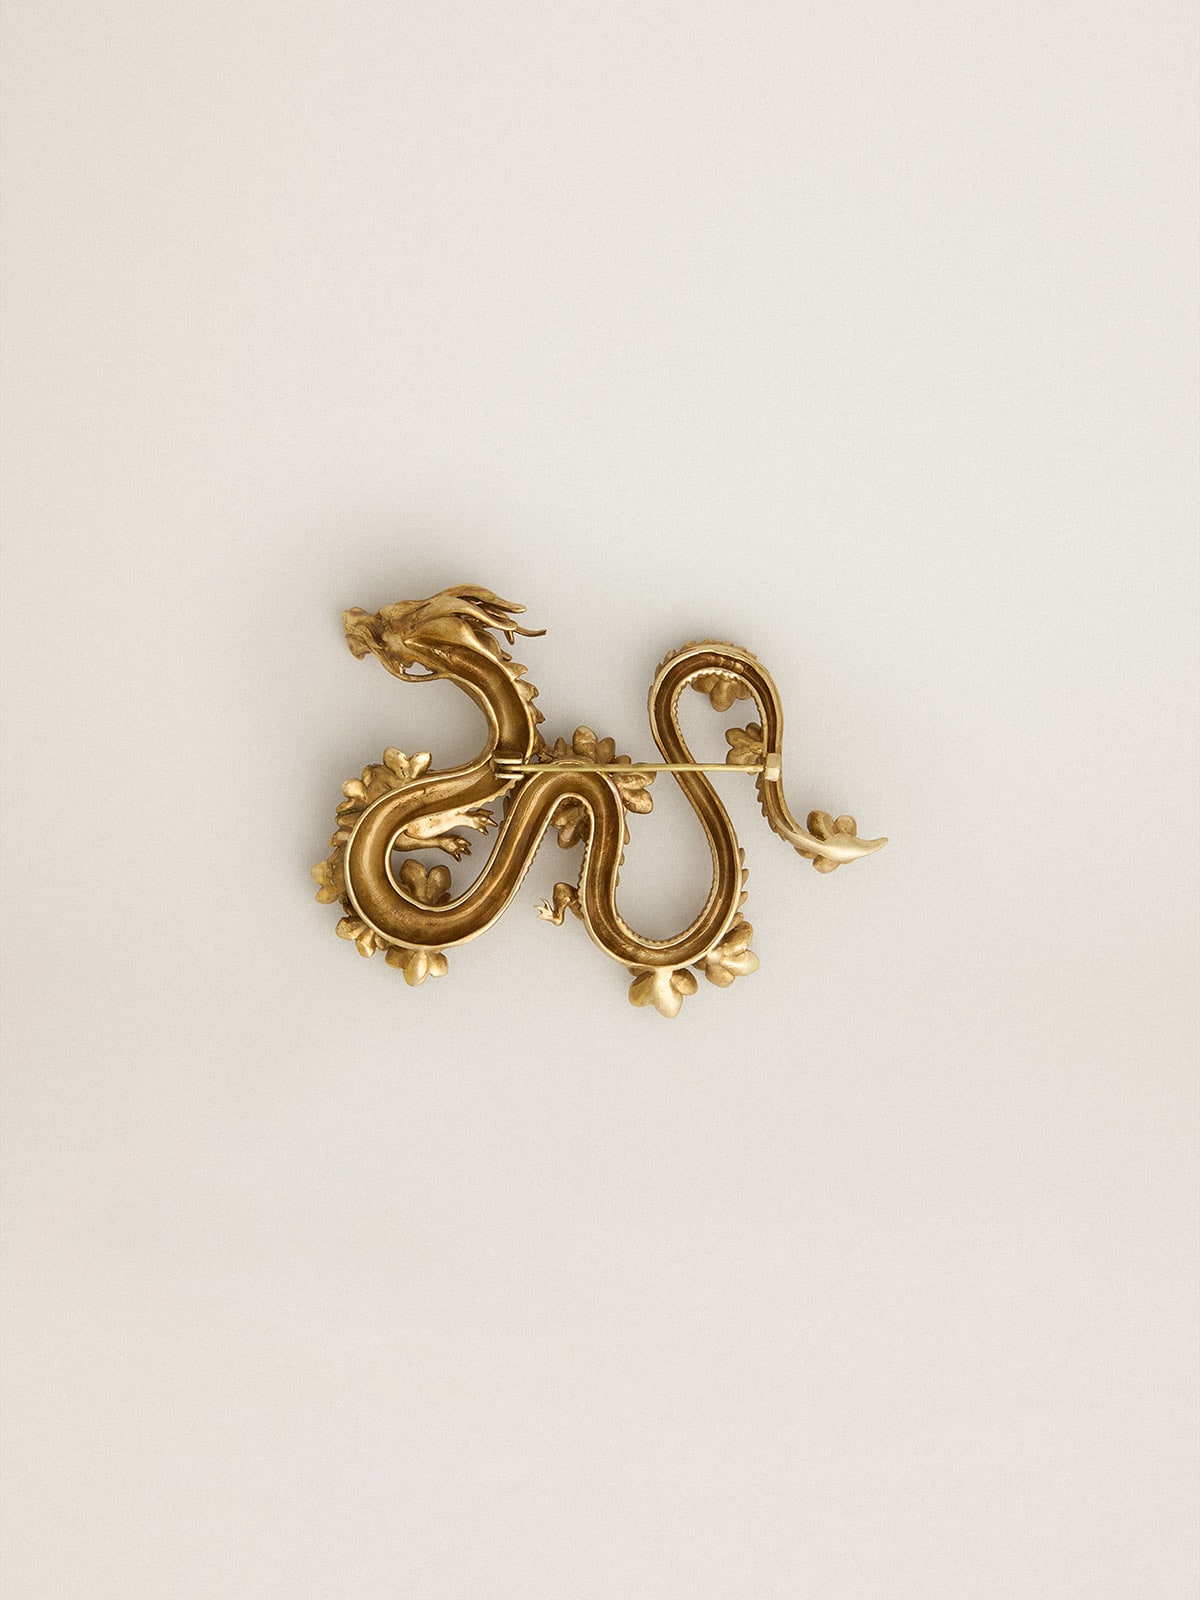 Golden Goose - Broche CNY na cor ouro velho em forma de dragão in 